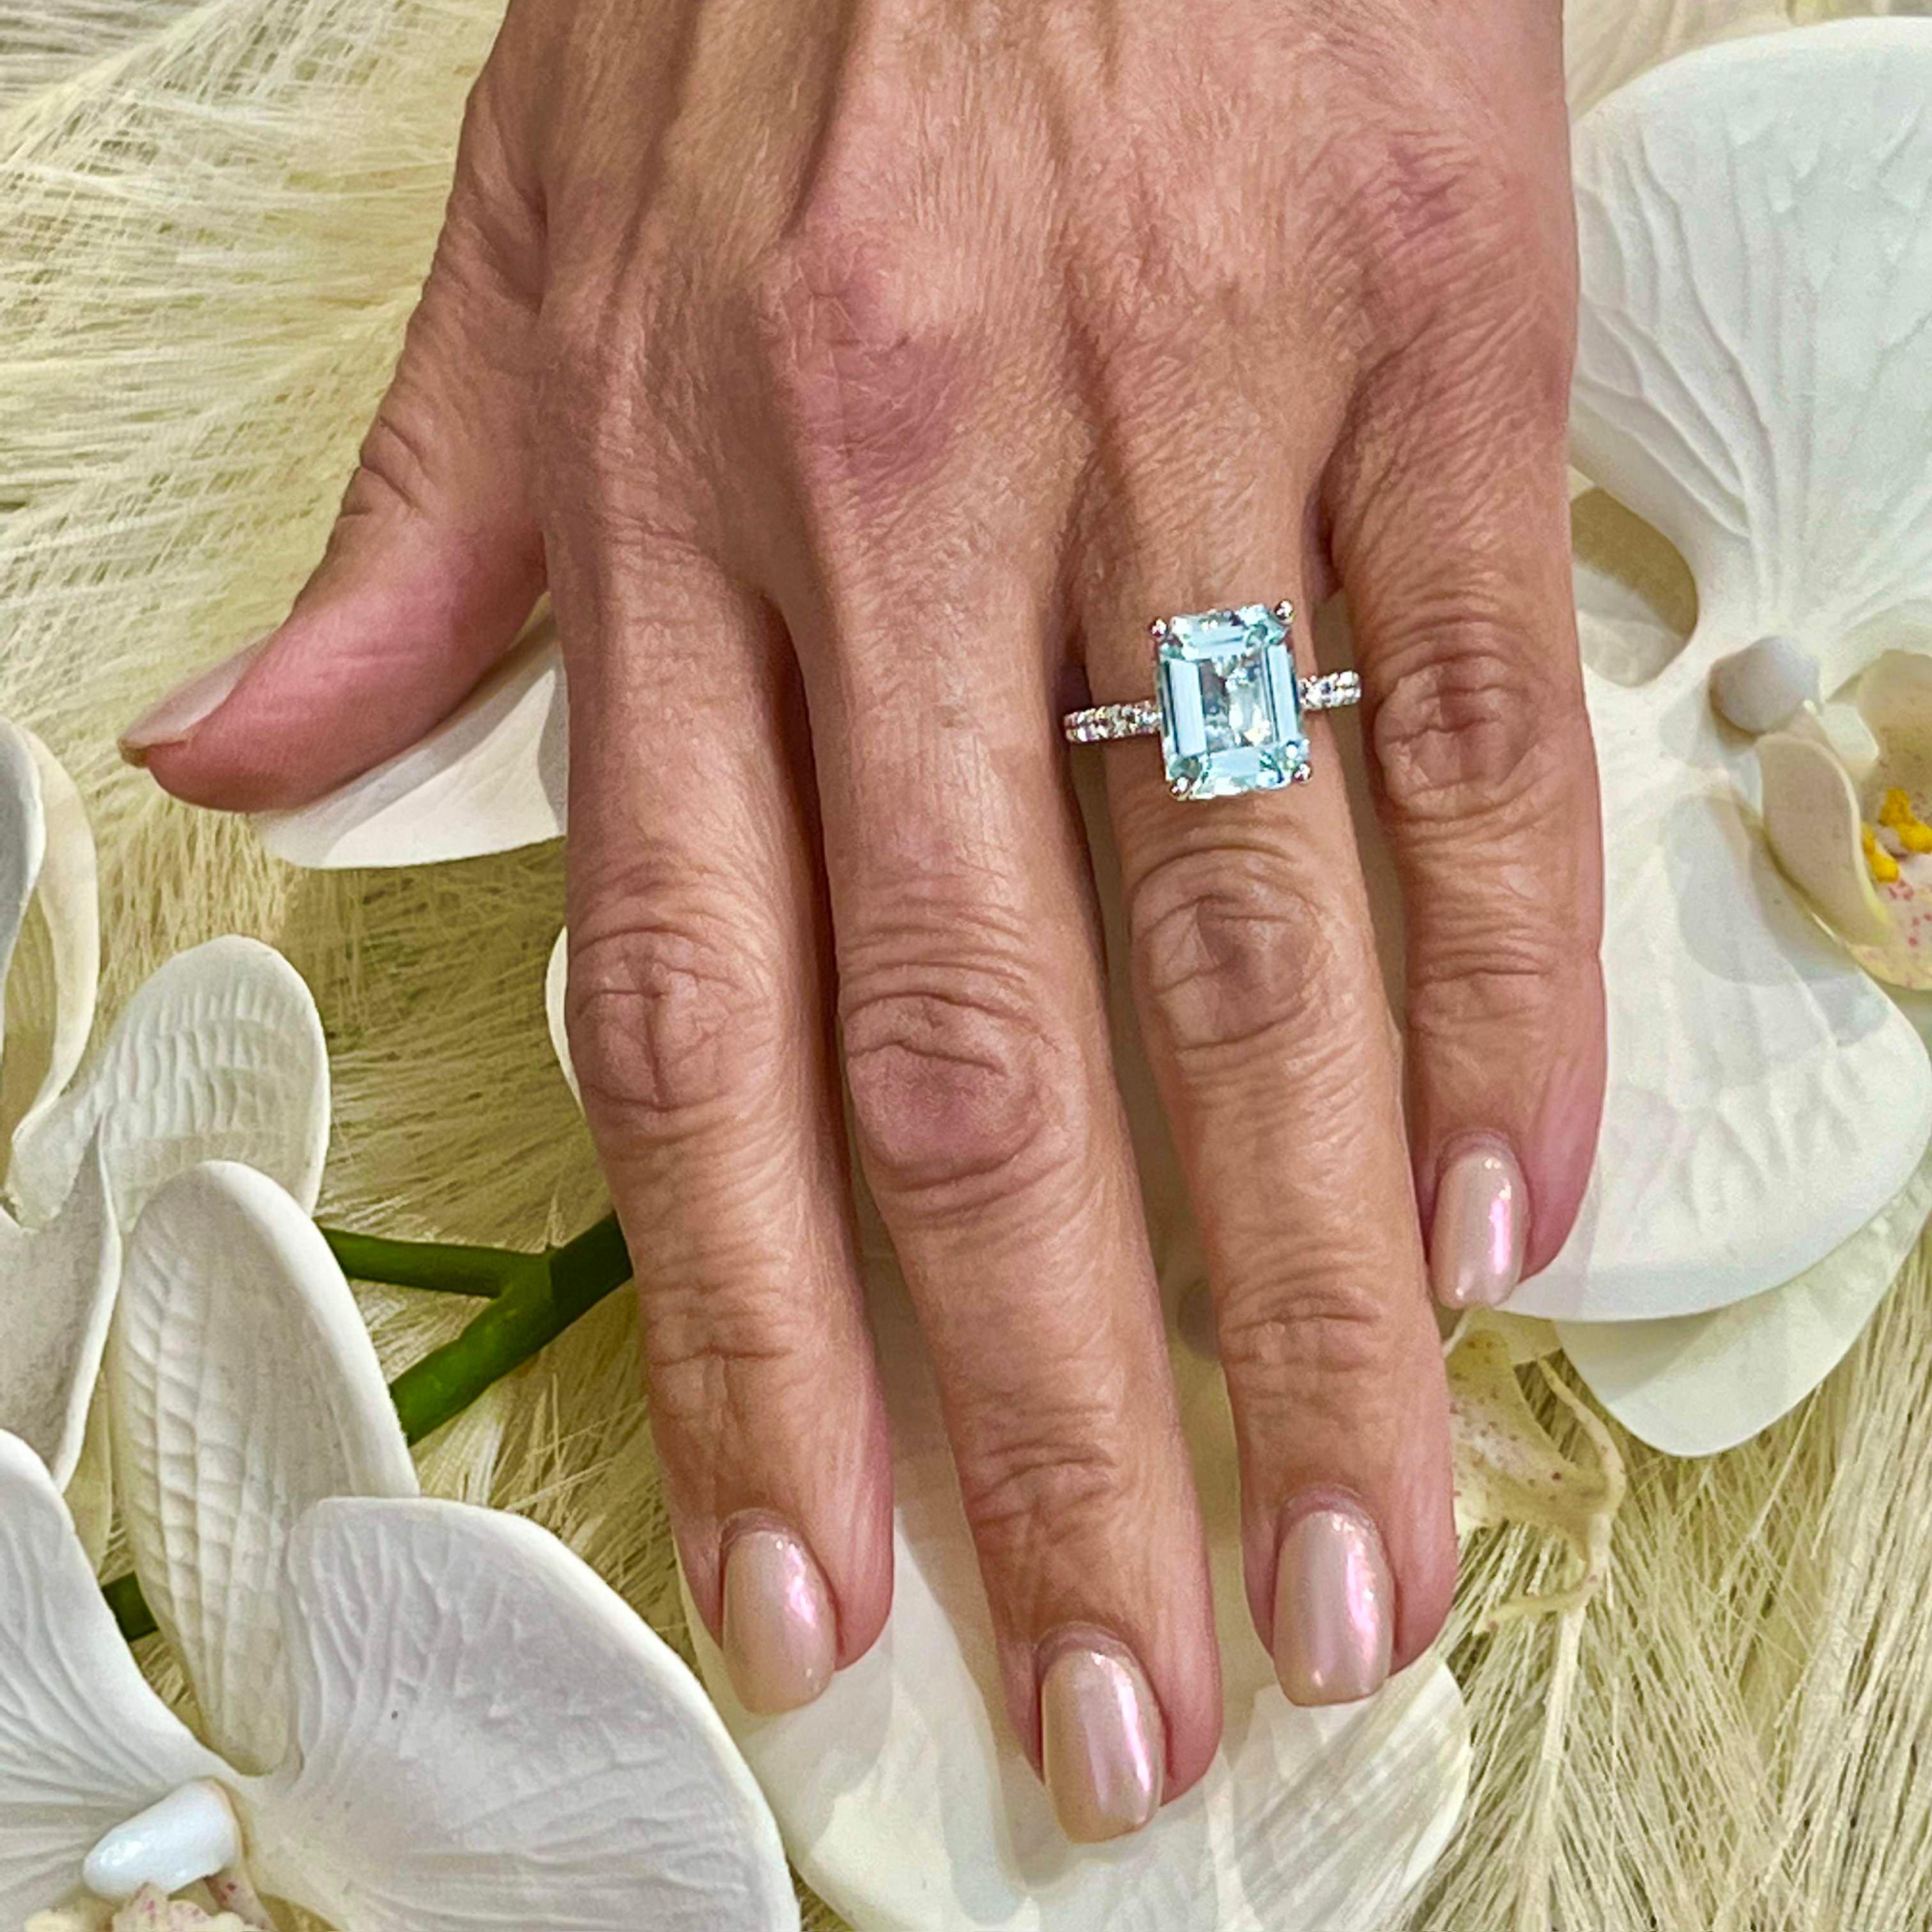 Natürlicher Aquamarin Diamant Ring Größe 6,5 14k W Gold 5,78 TCW zertifiziert $4.950 217851

Dies ist ein einzigartiges, maßgeschneidertes, glamouröses Schmuckstück!

Nichts sagt mehr 